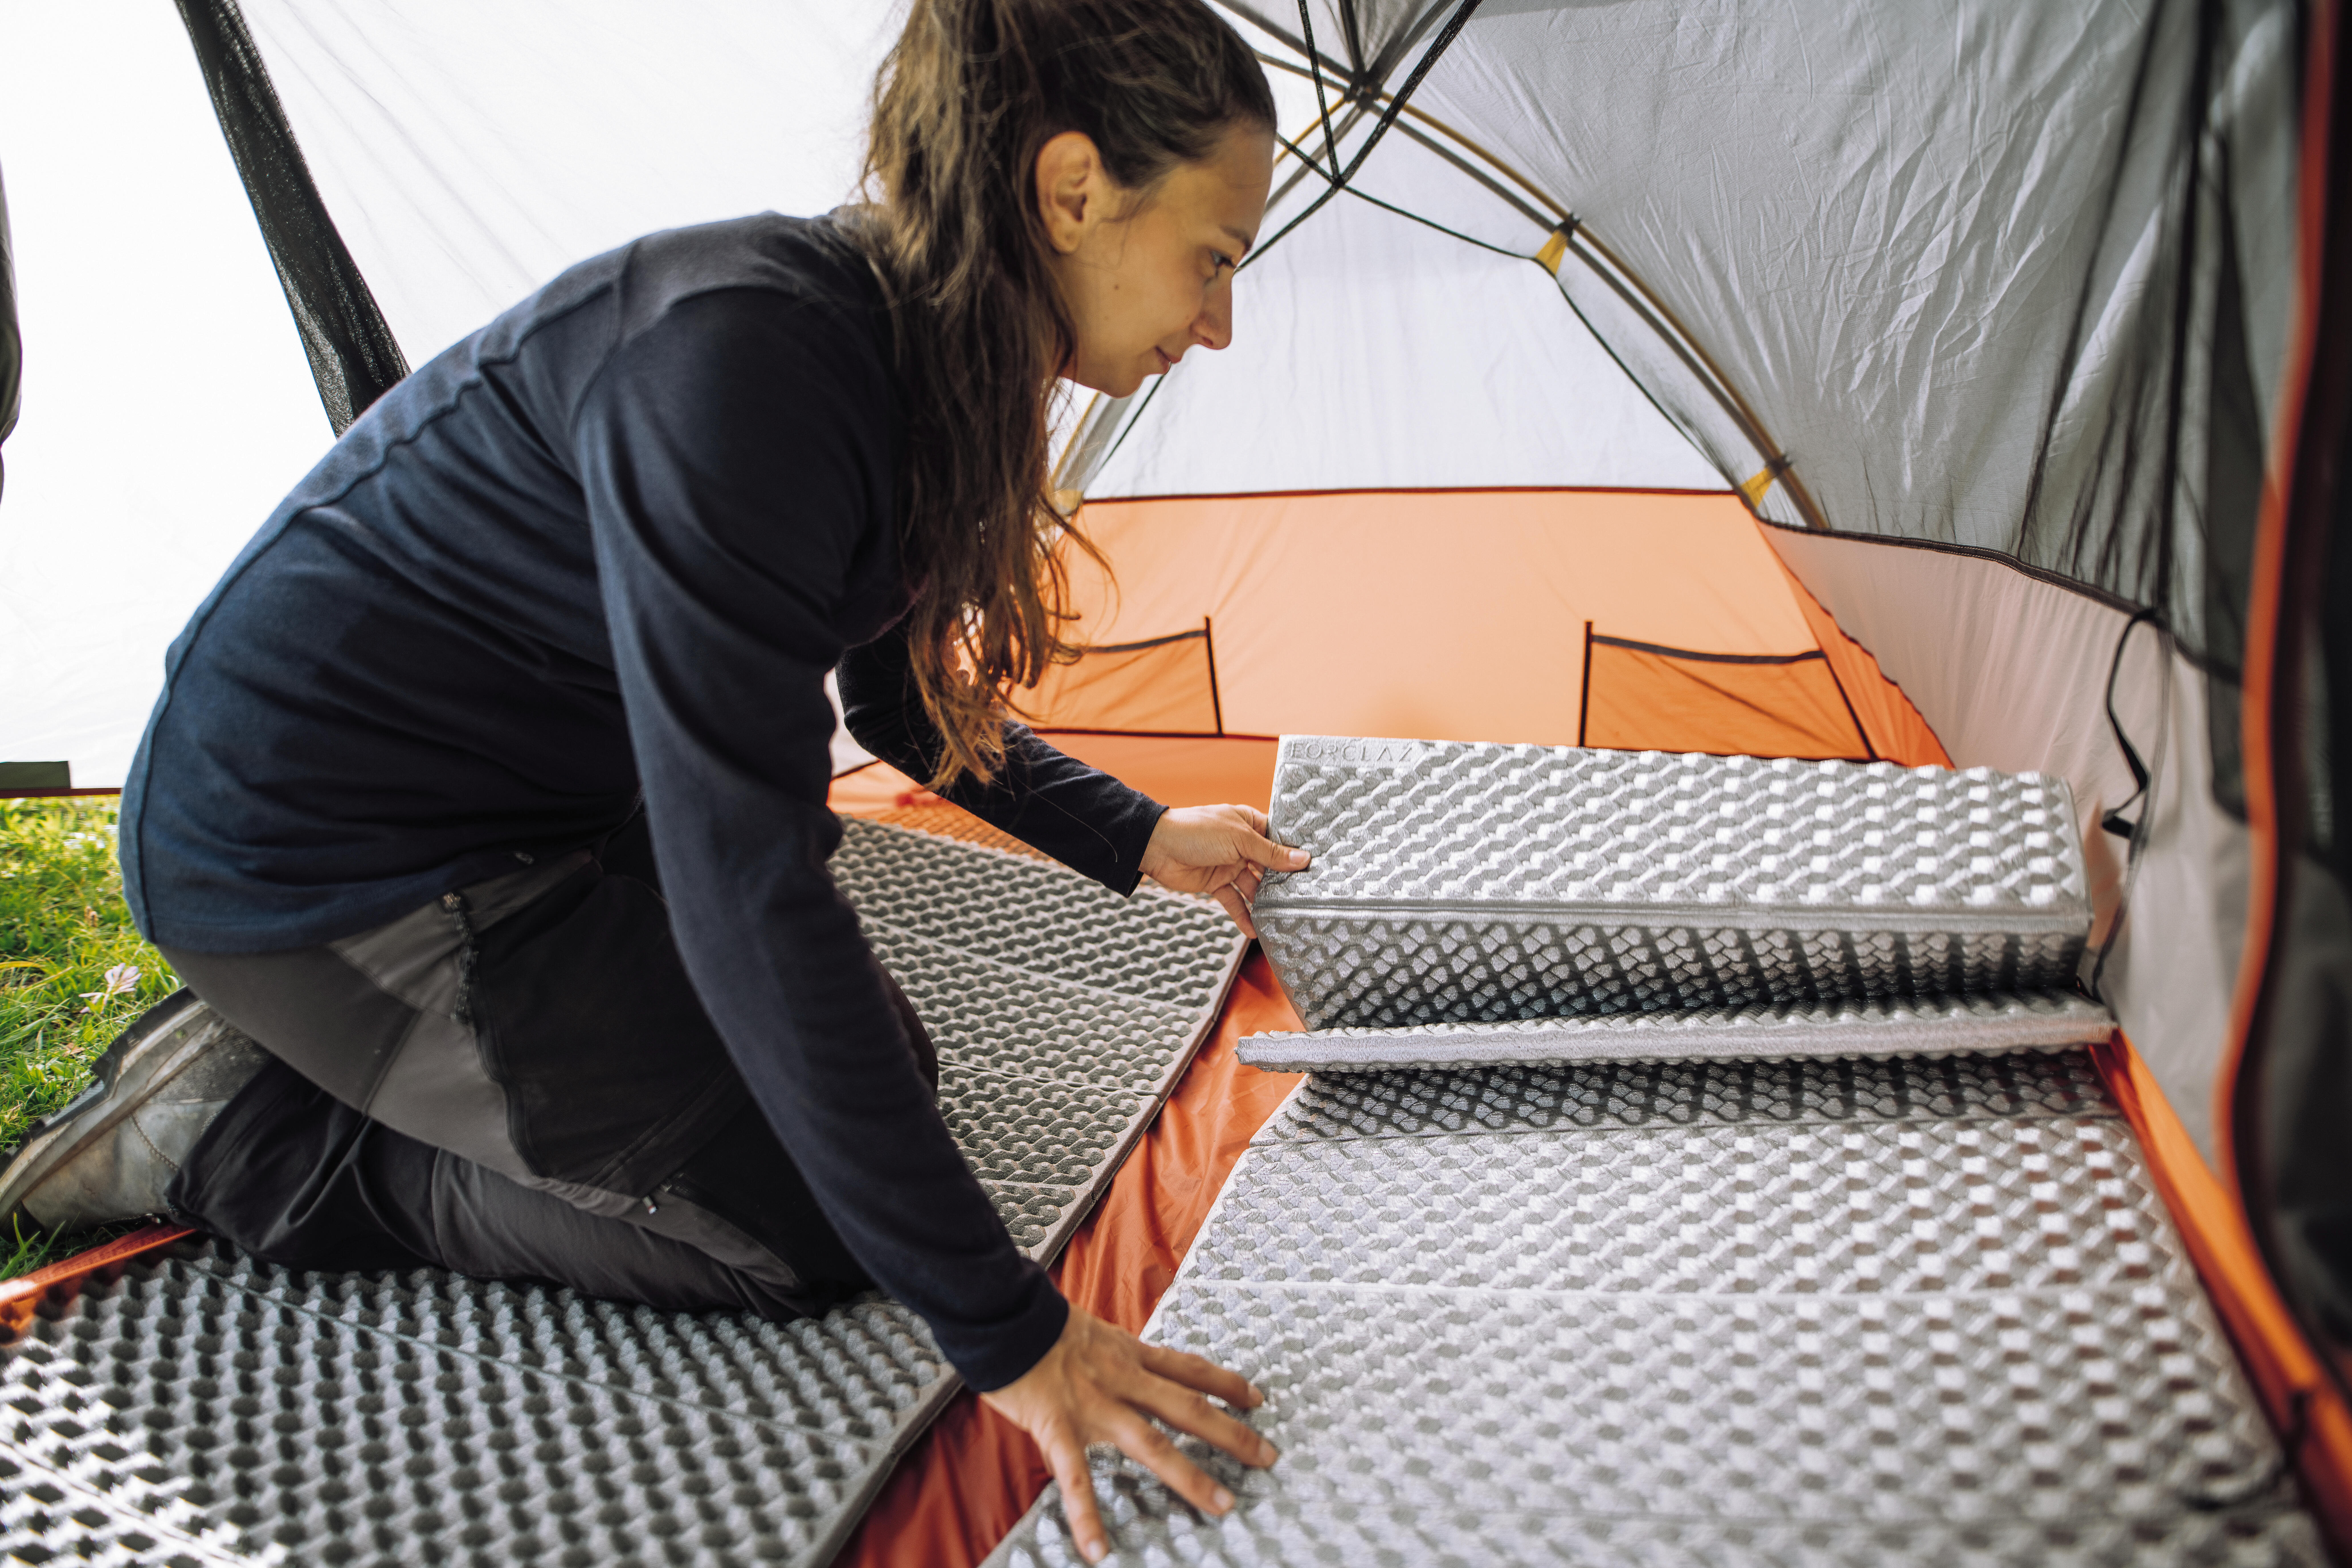 Hogyan lehet növelni a földre tett Trek 500 matrac hőszigetelő képességét?